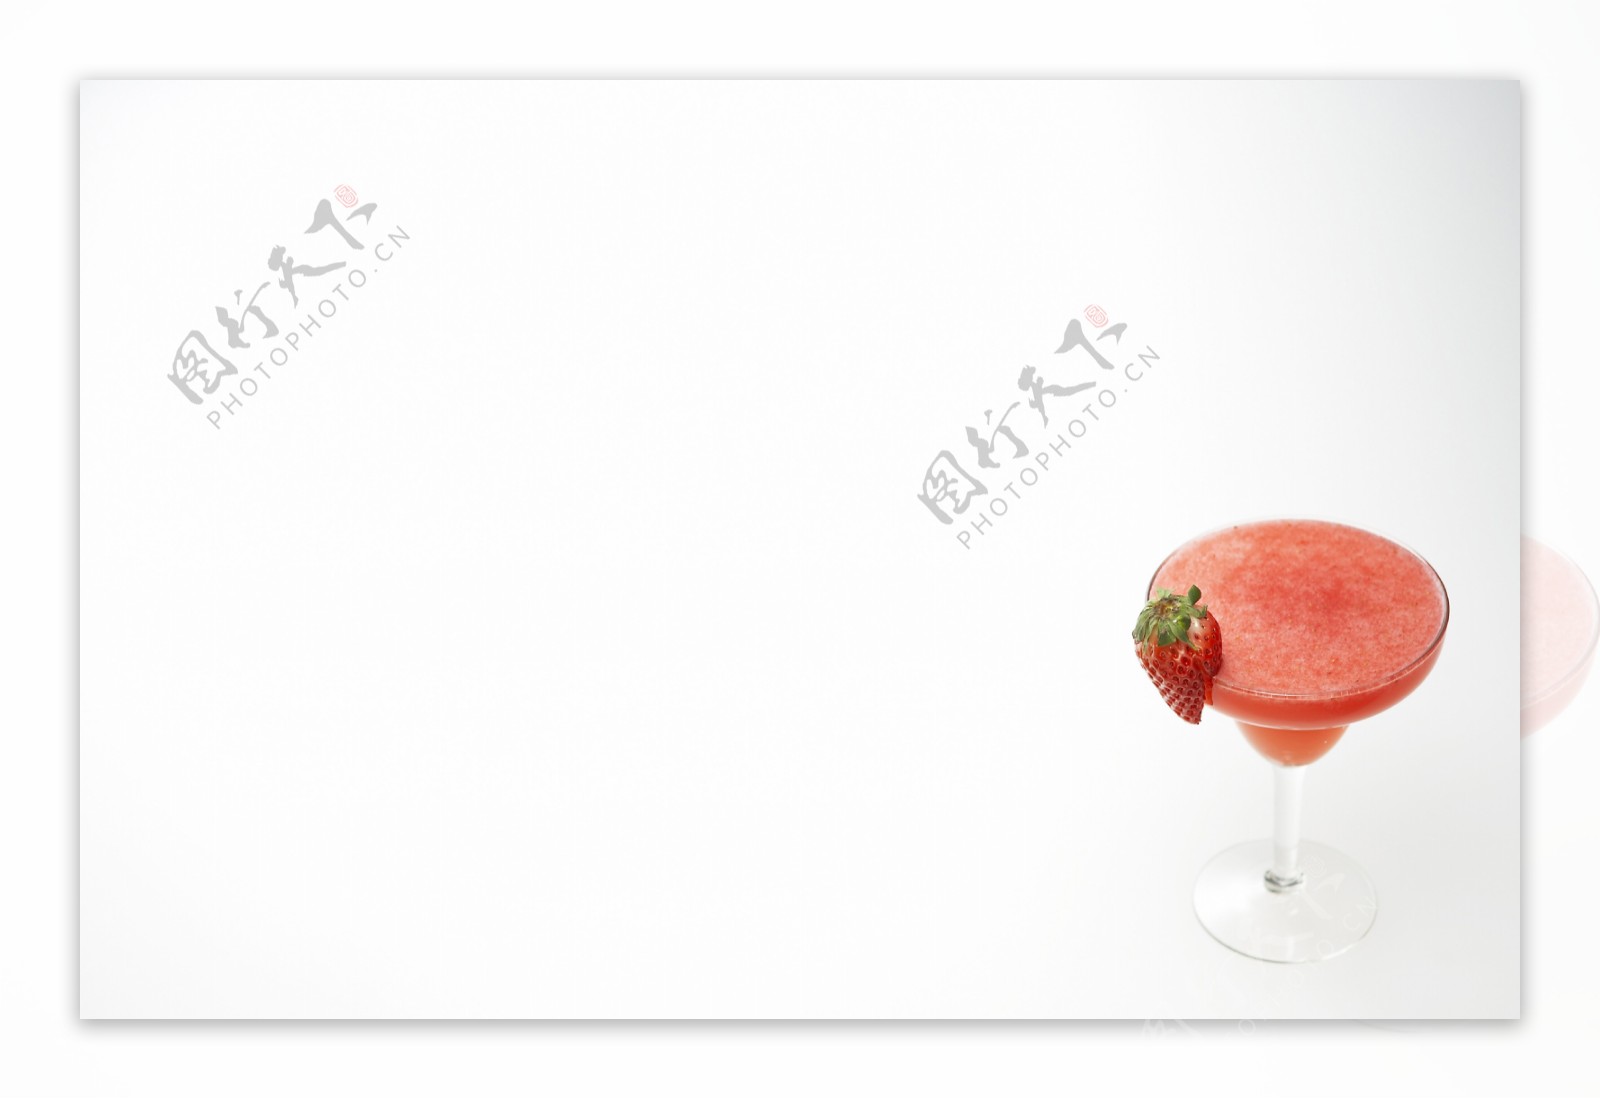 草莓鸡尾酒图片